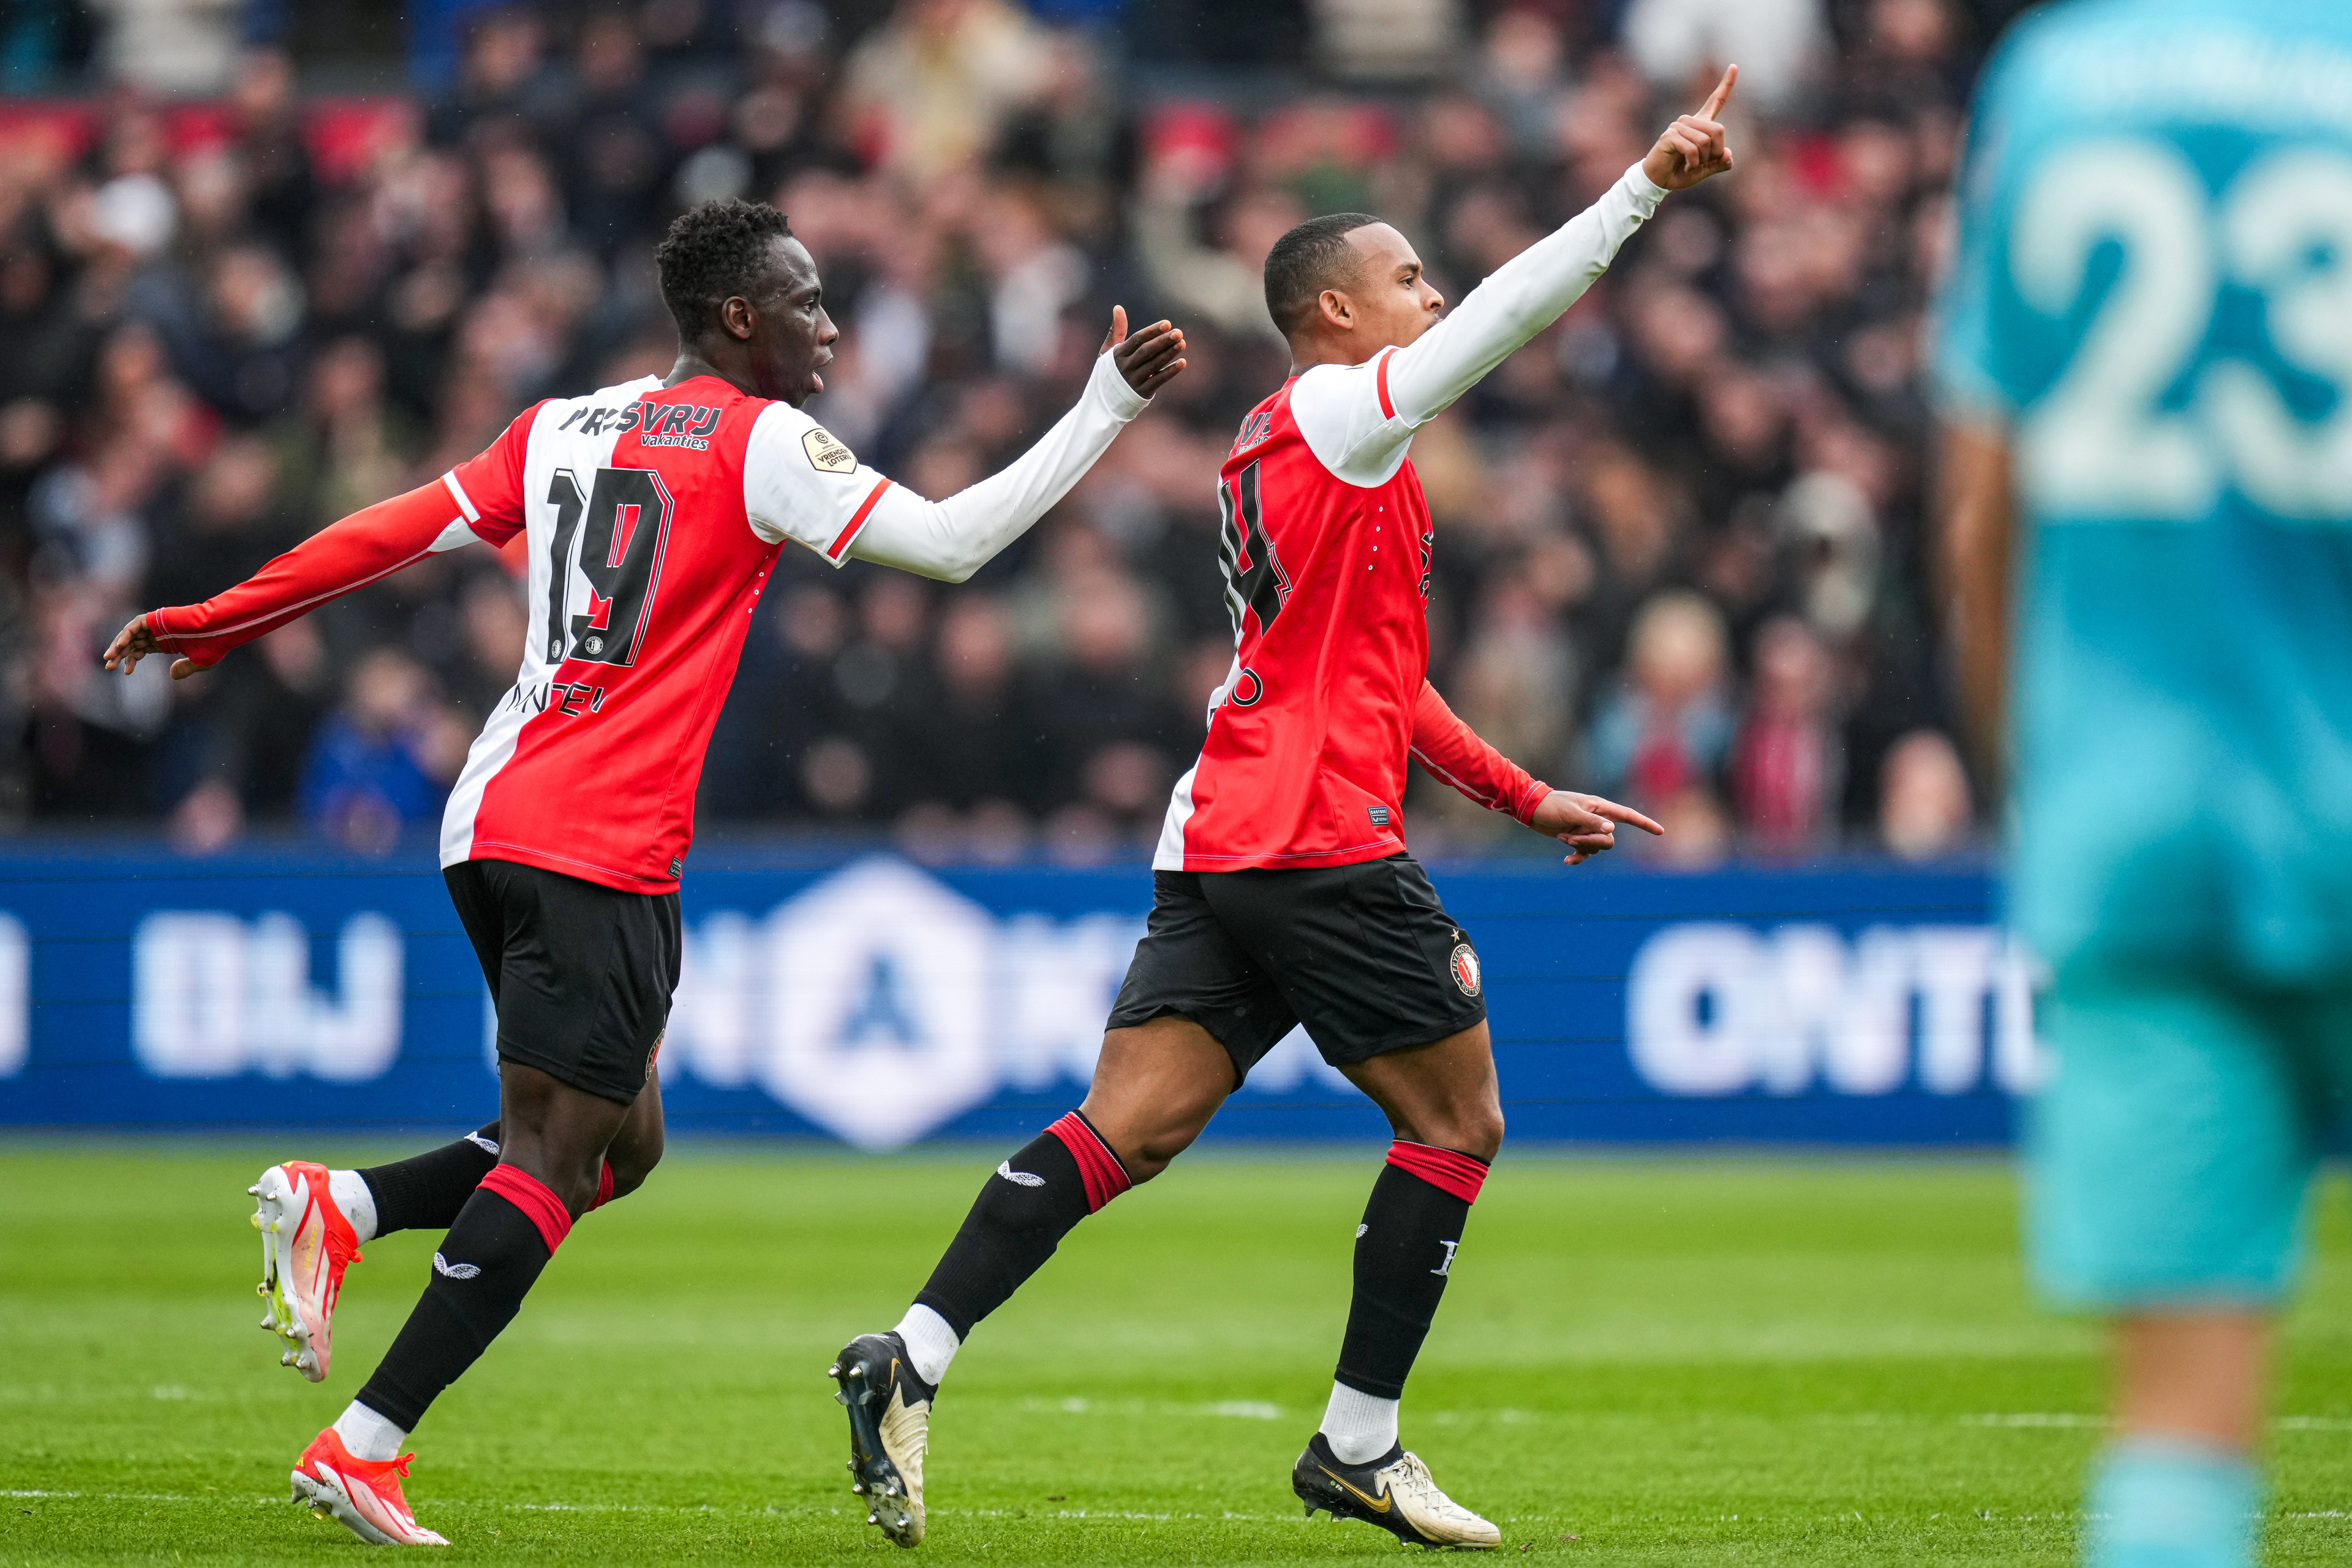 Liveblog • Feyenoord - FC Utrecht [4-2]